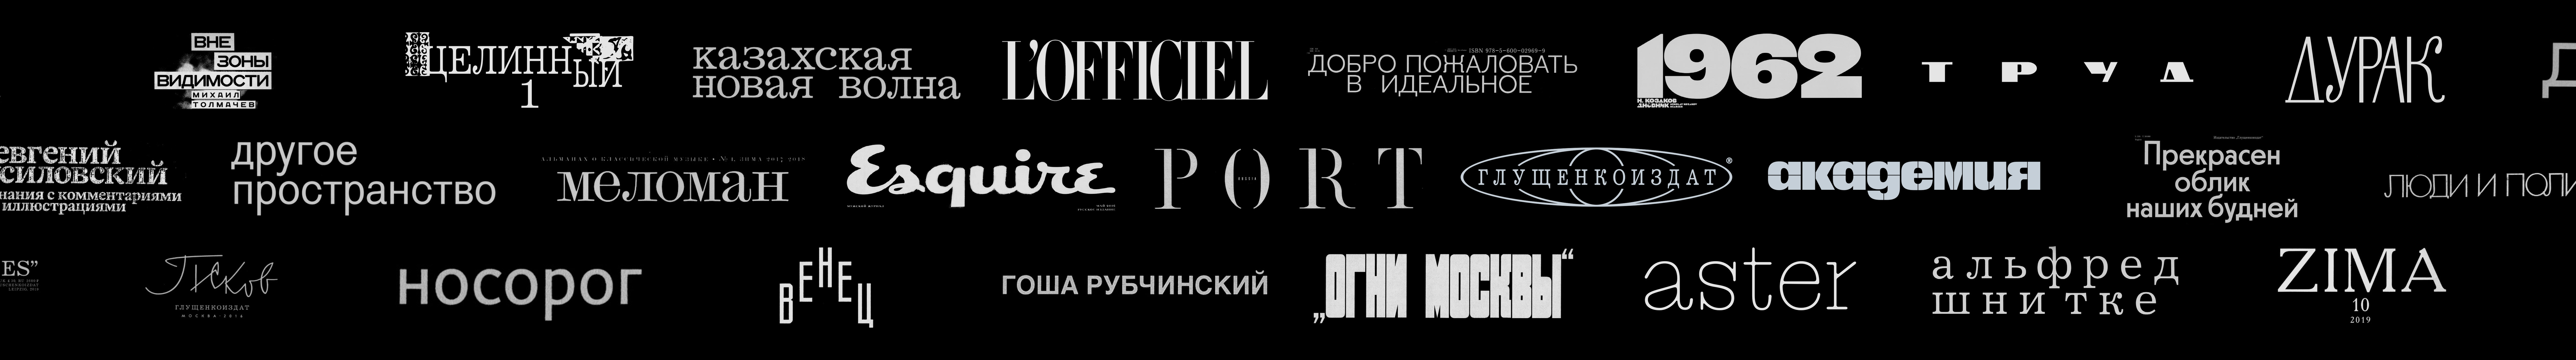 Profil-Banner von Kirill Gluschenko